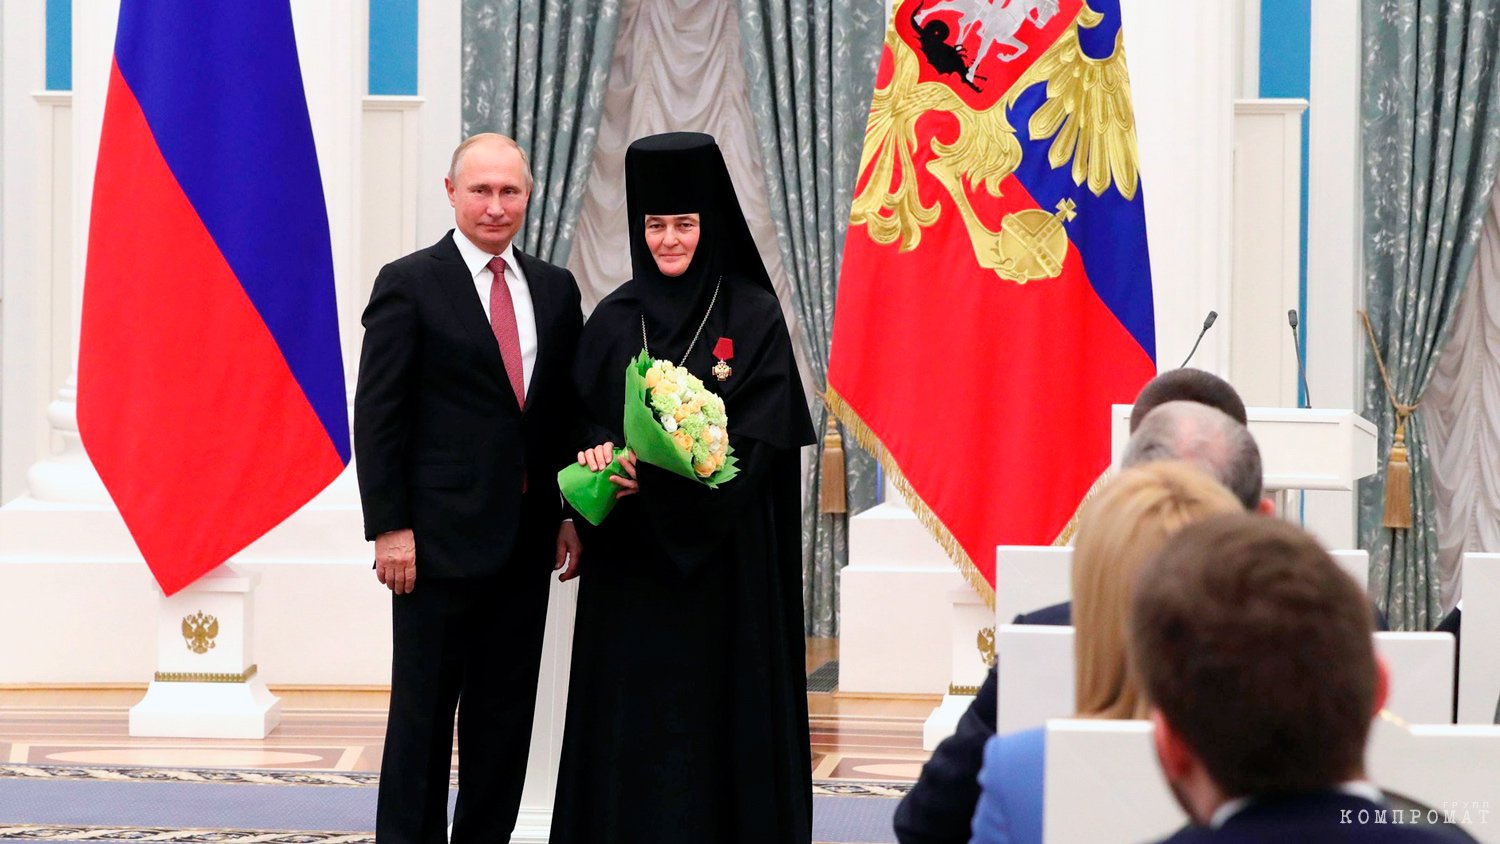 Владимир Путин в Кремле 27 ноября 2018 года вручил настоятельнице Покровского монастыря Феофании орден «За заслуги перед Отечеством» IV степени